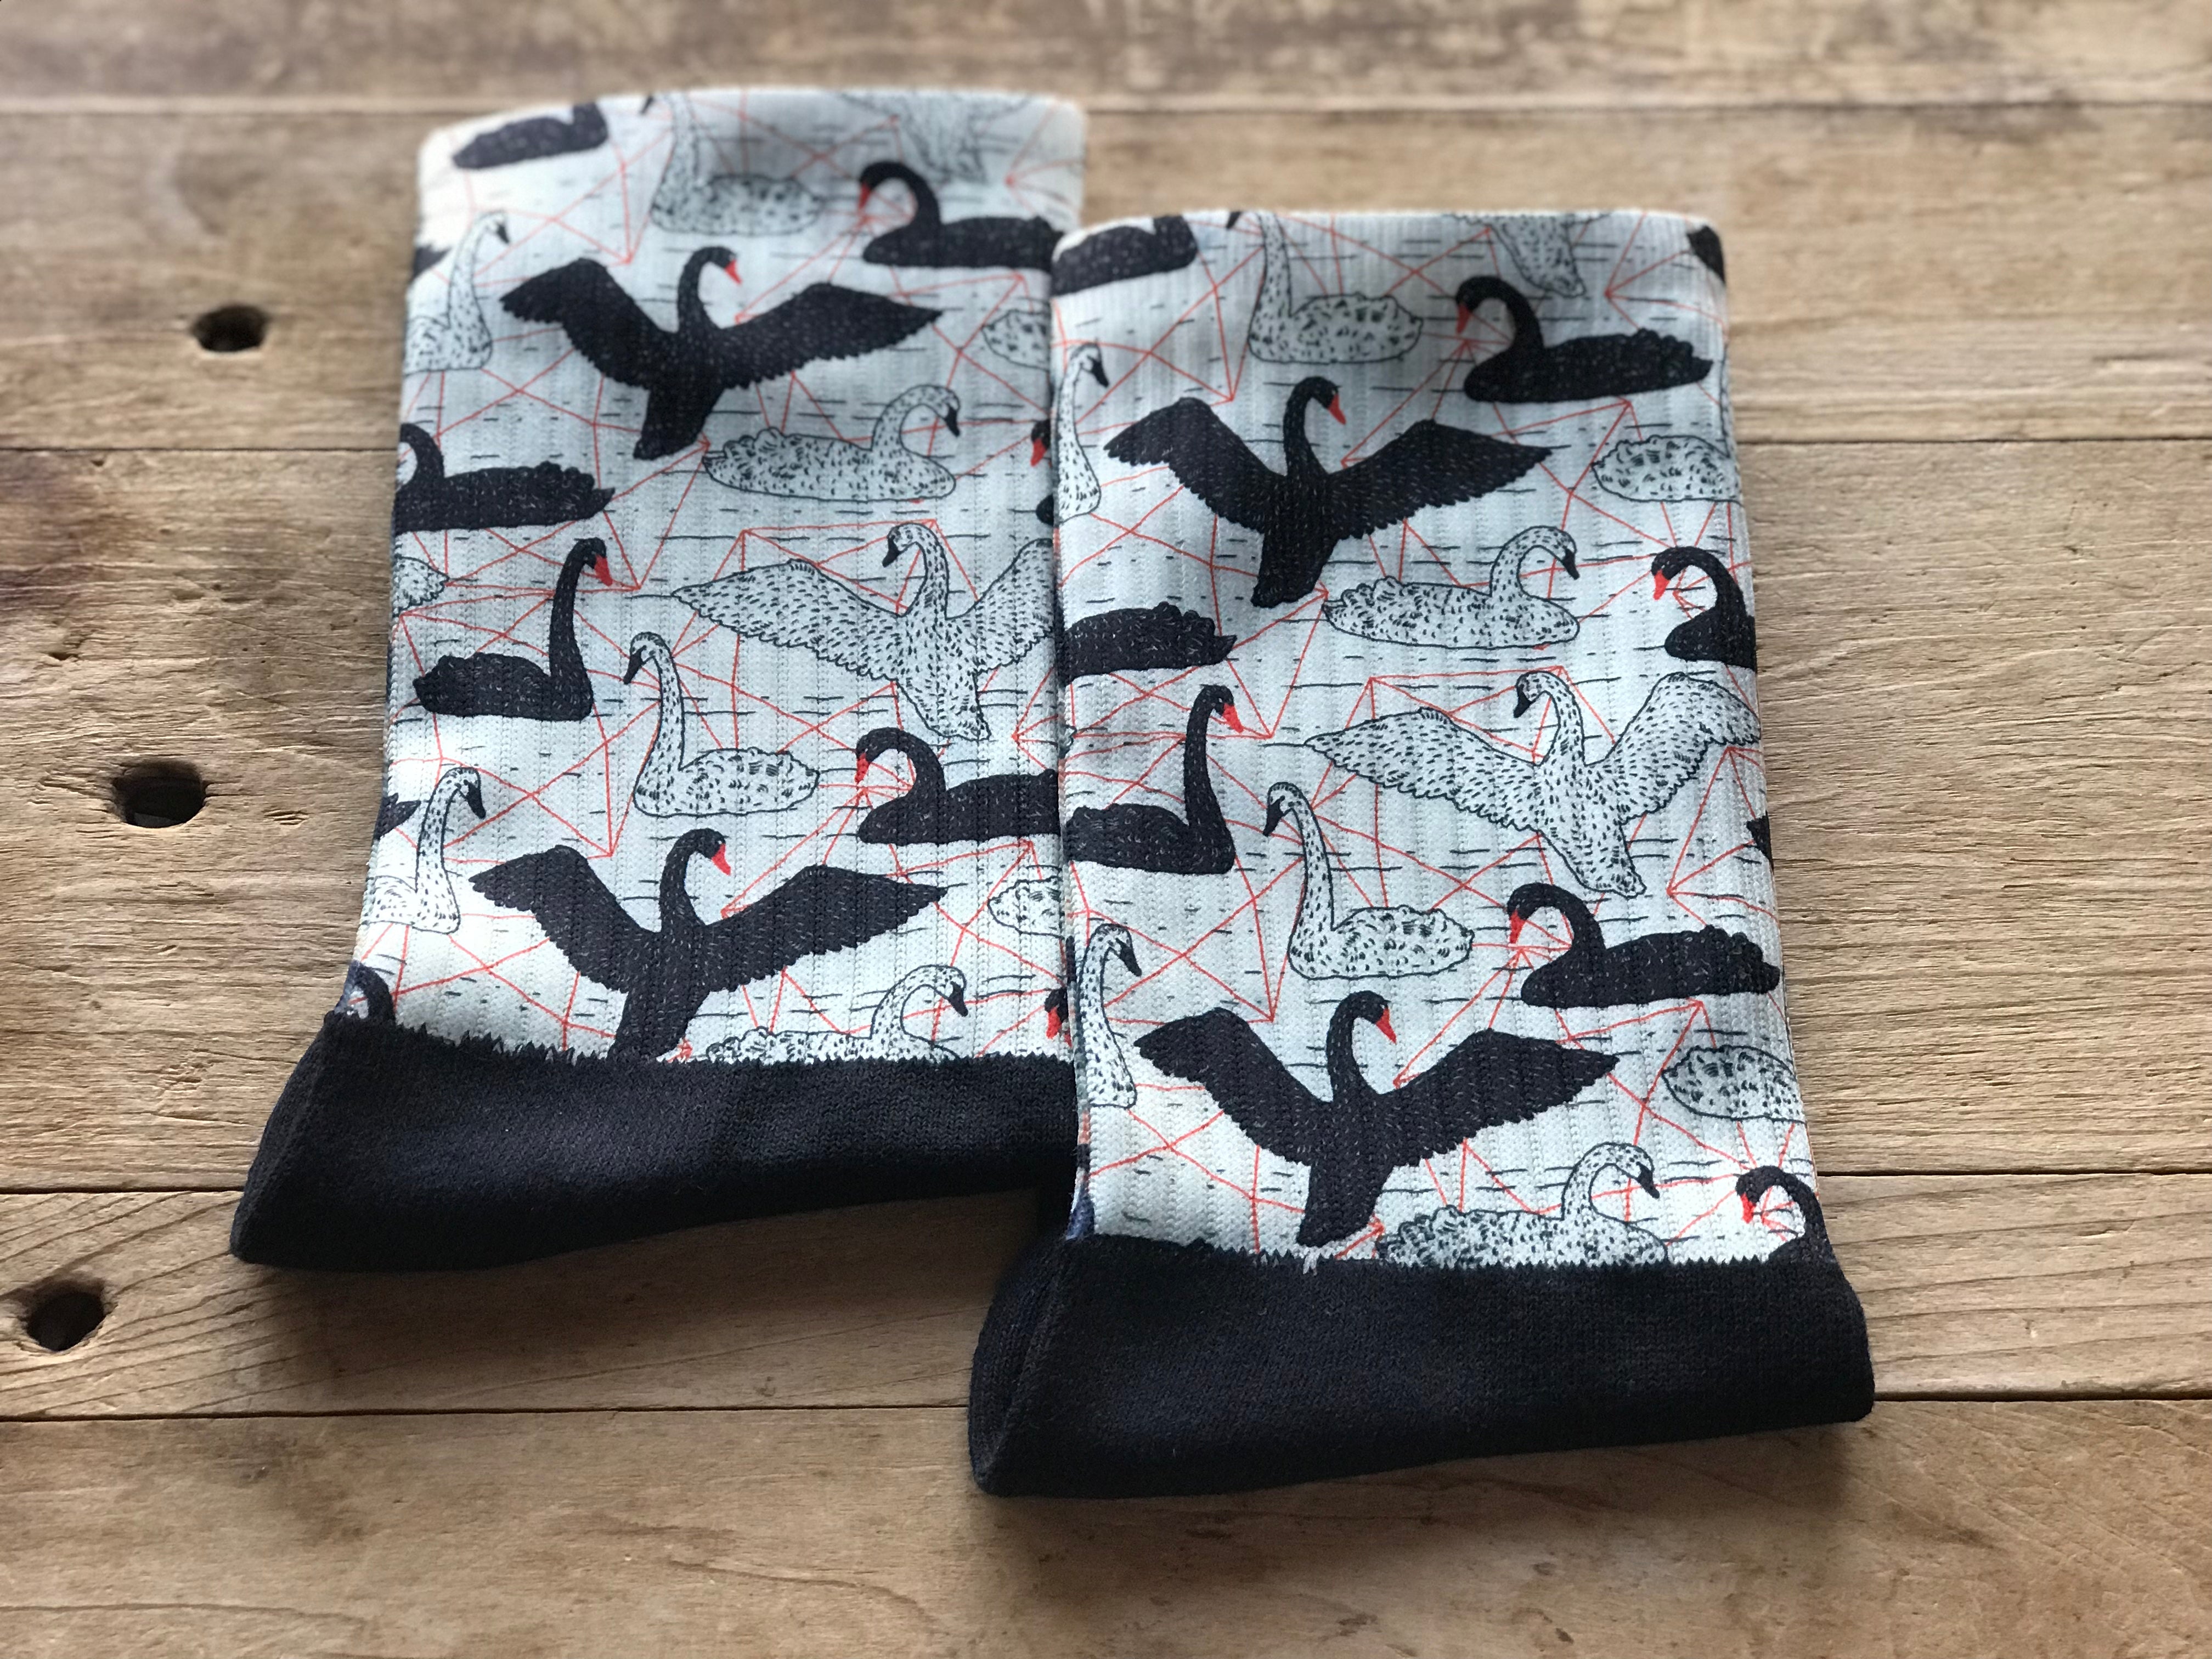 Black & White Floating Swans His & Hers Socks